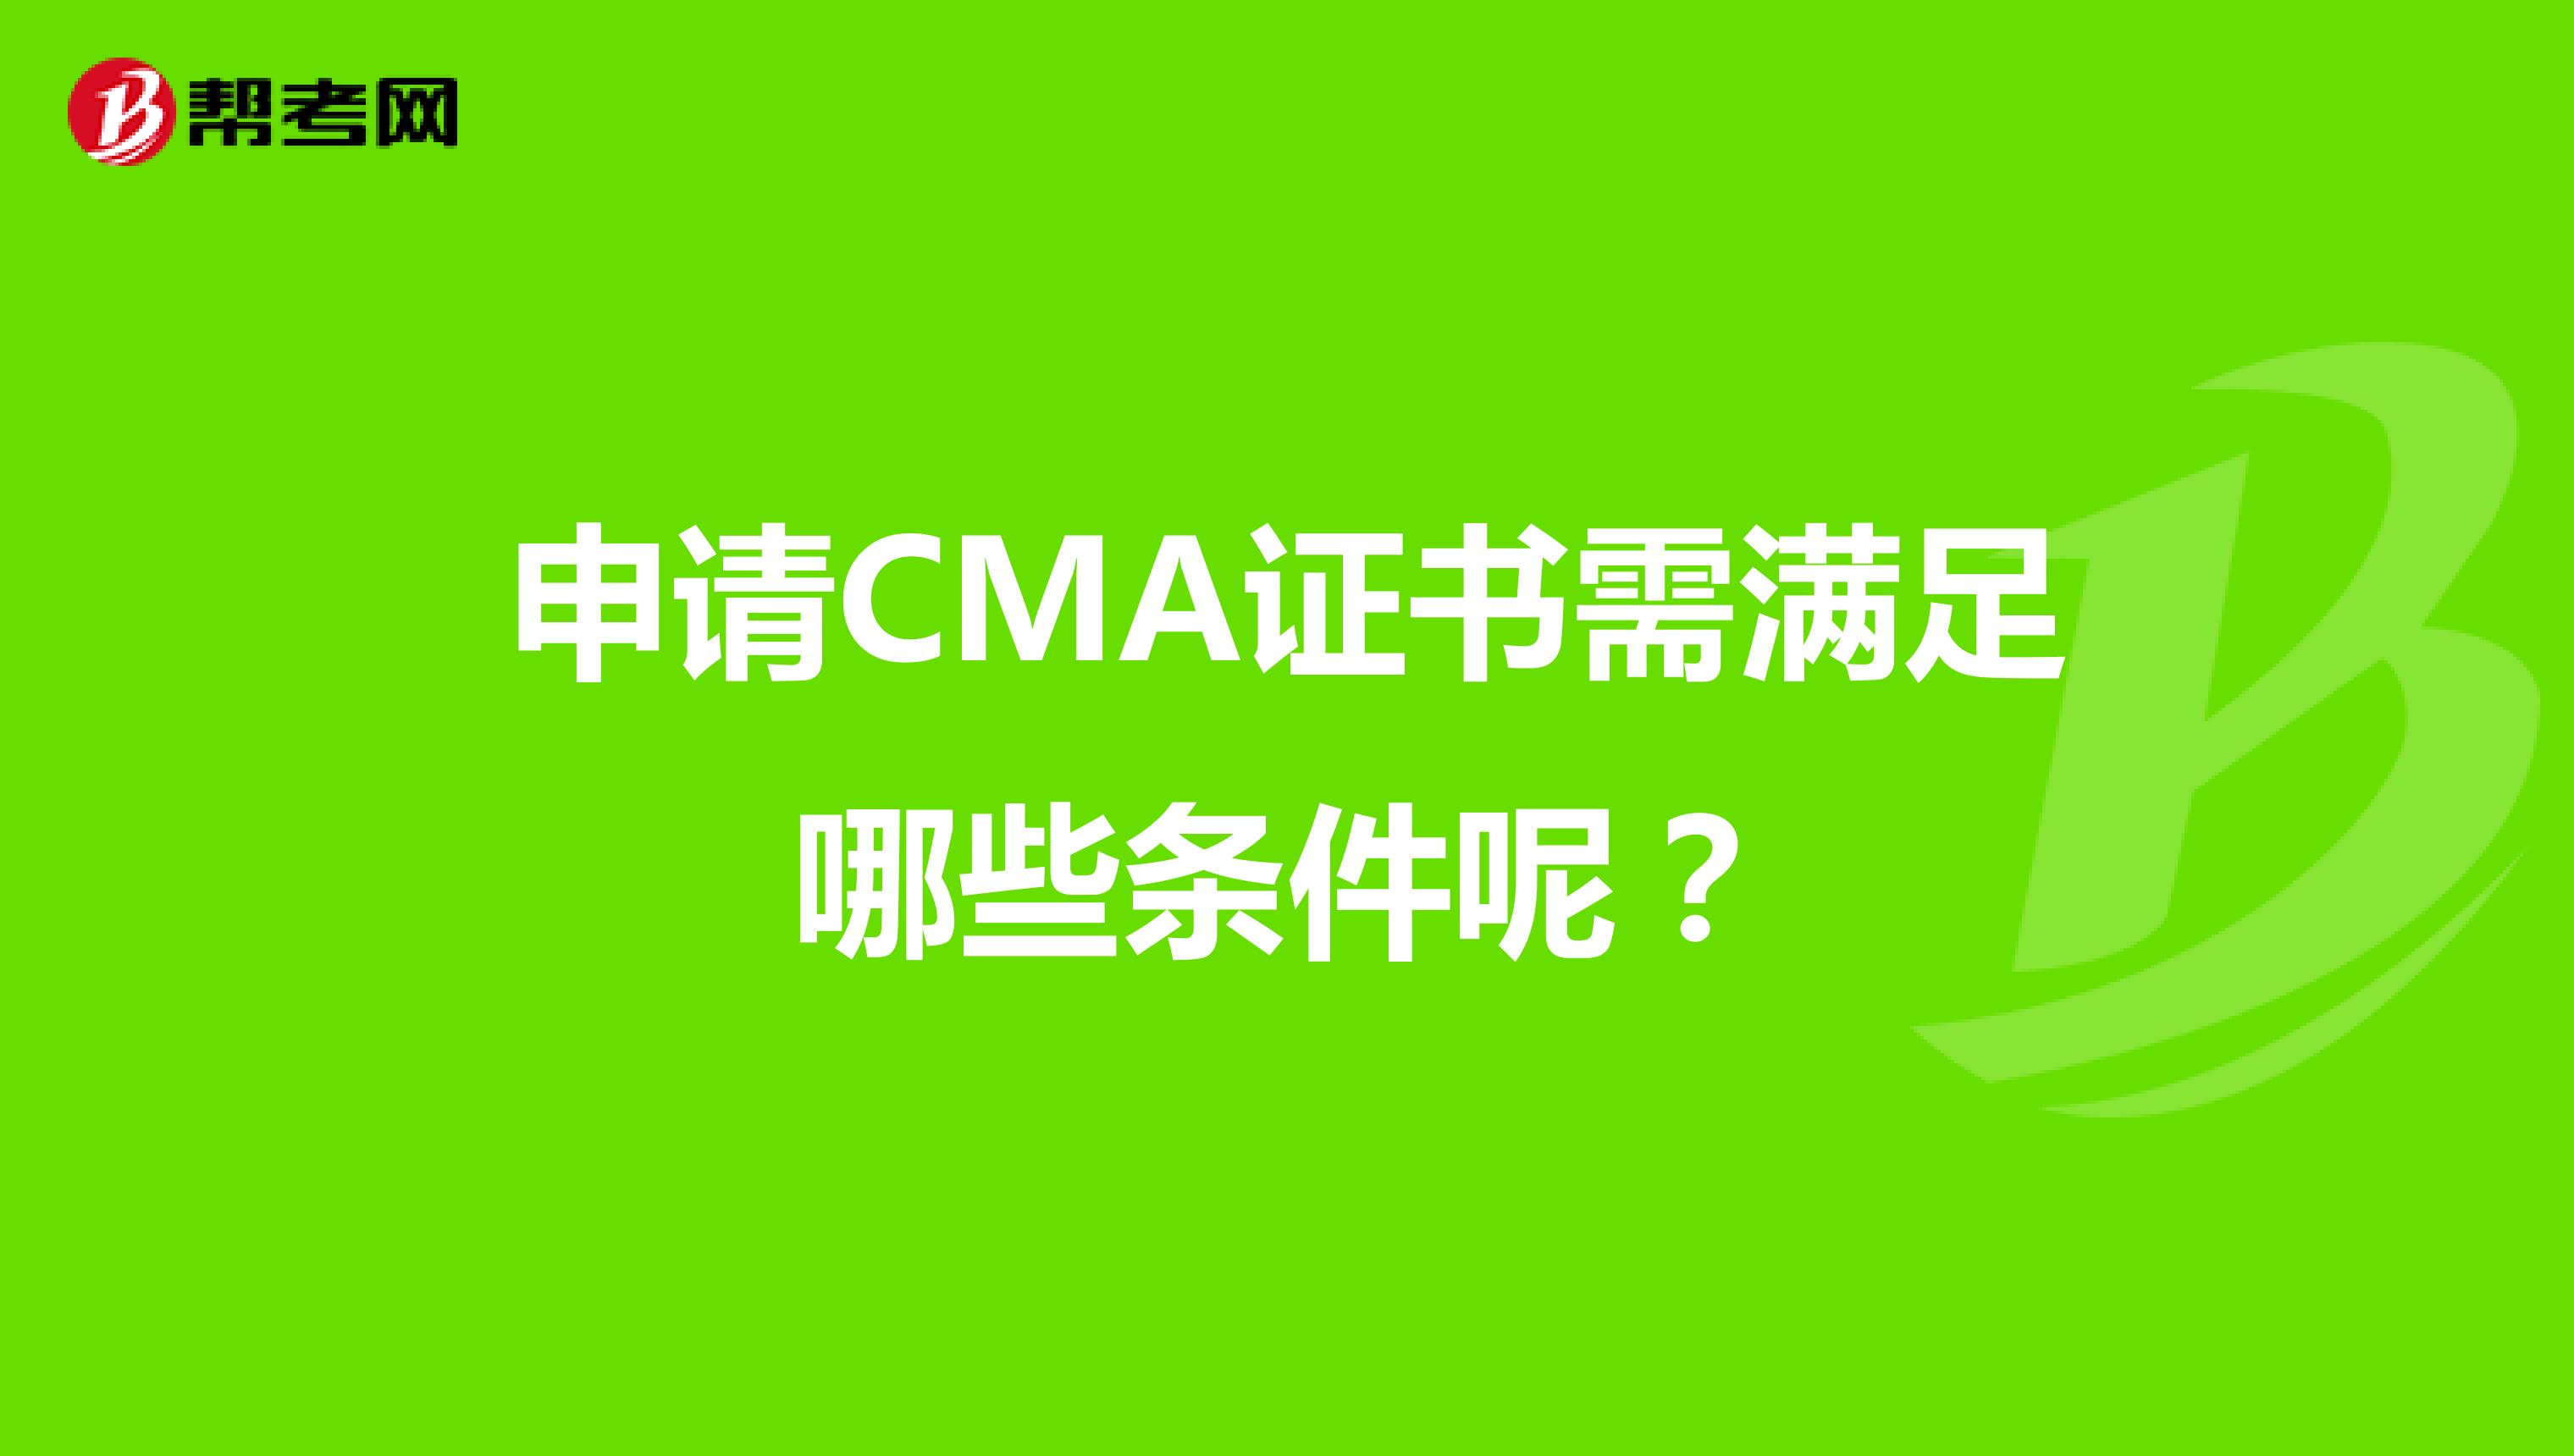 申请CMA证书需满足哪些条件呢？